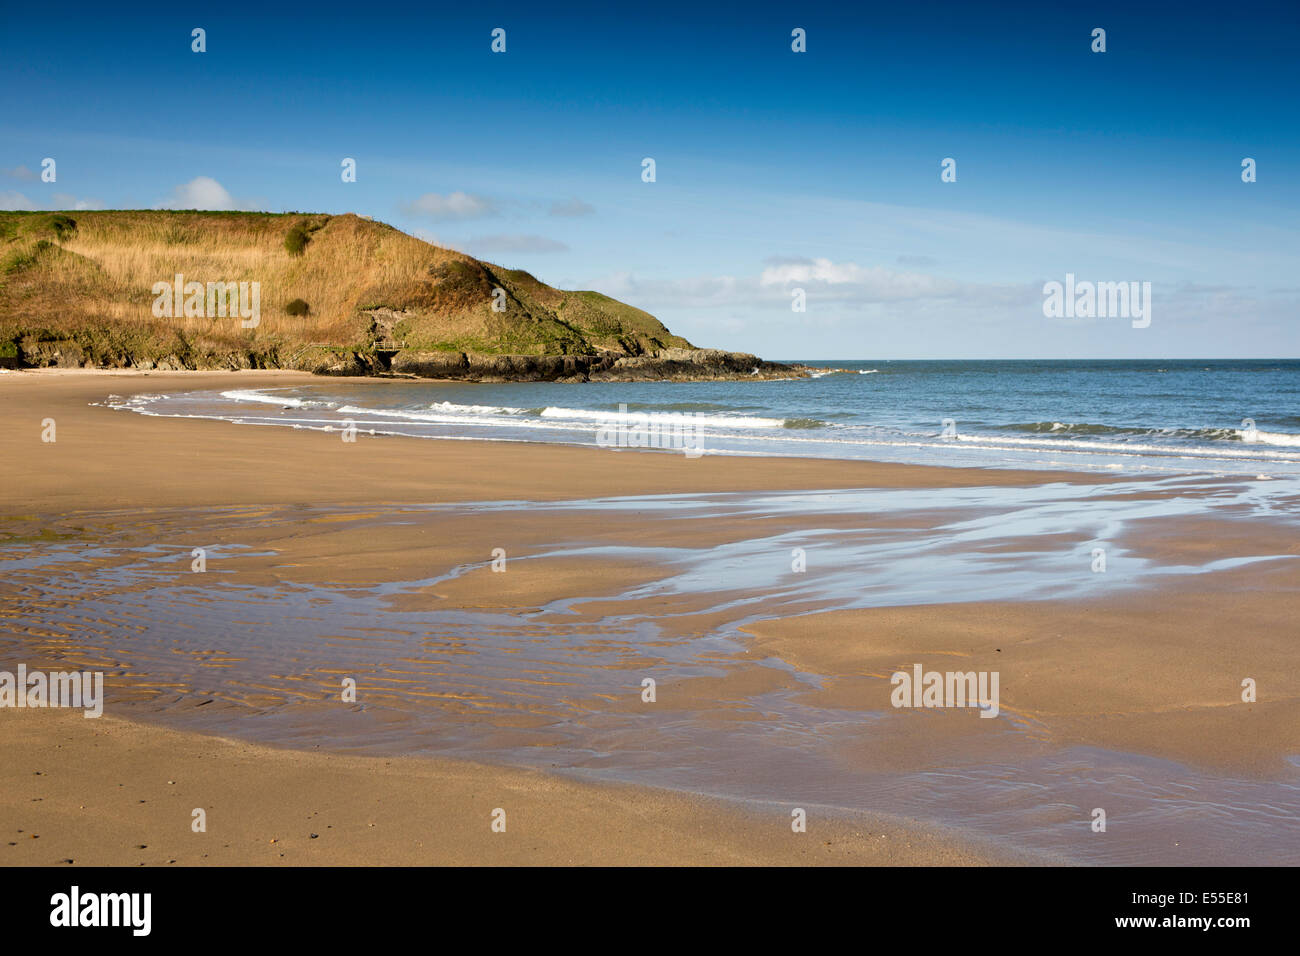 UK, Wales, Gwynedd, Lleyn peninsula, Porth Oer, Whistling Sands beach Stock Photo